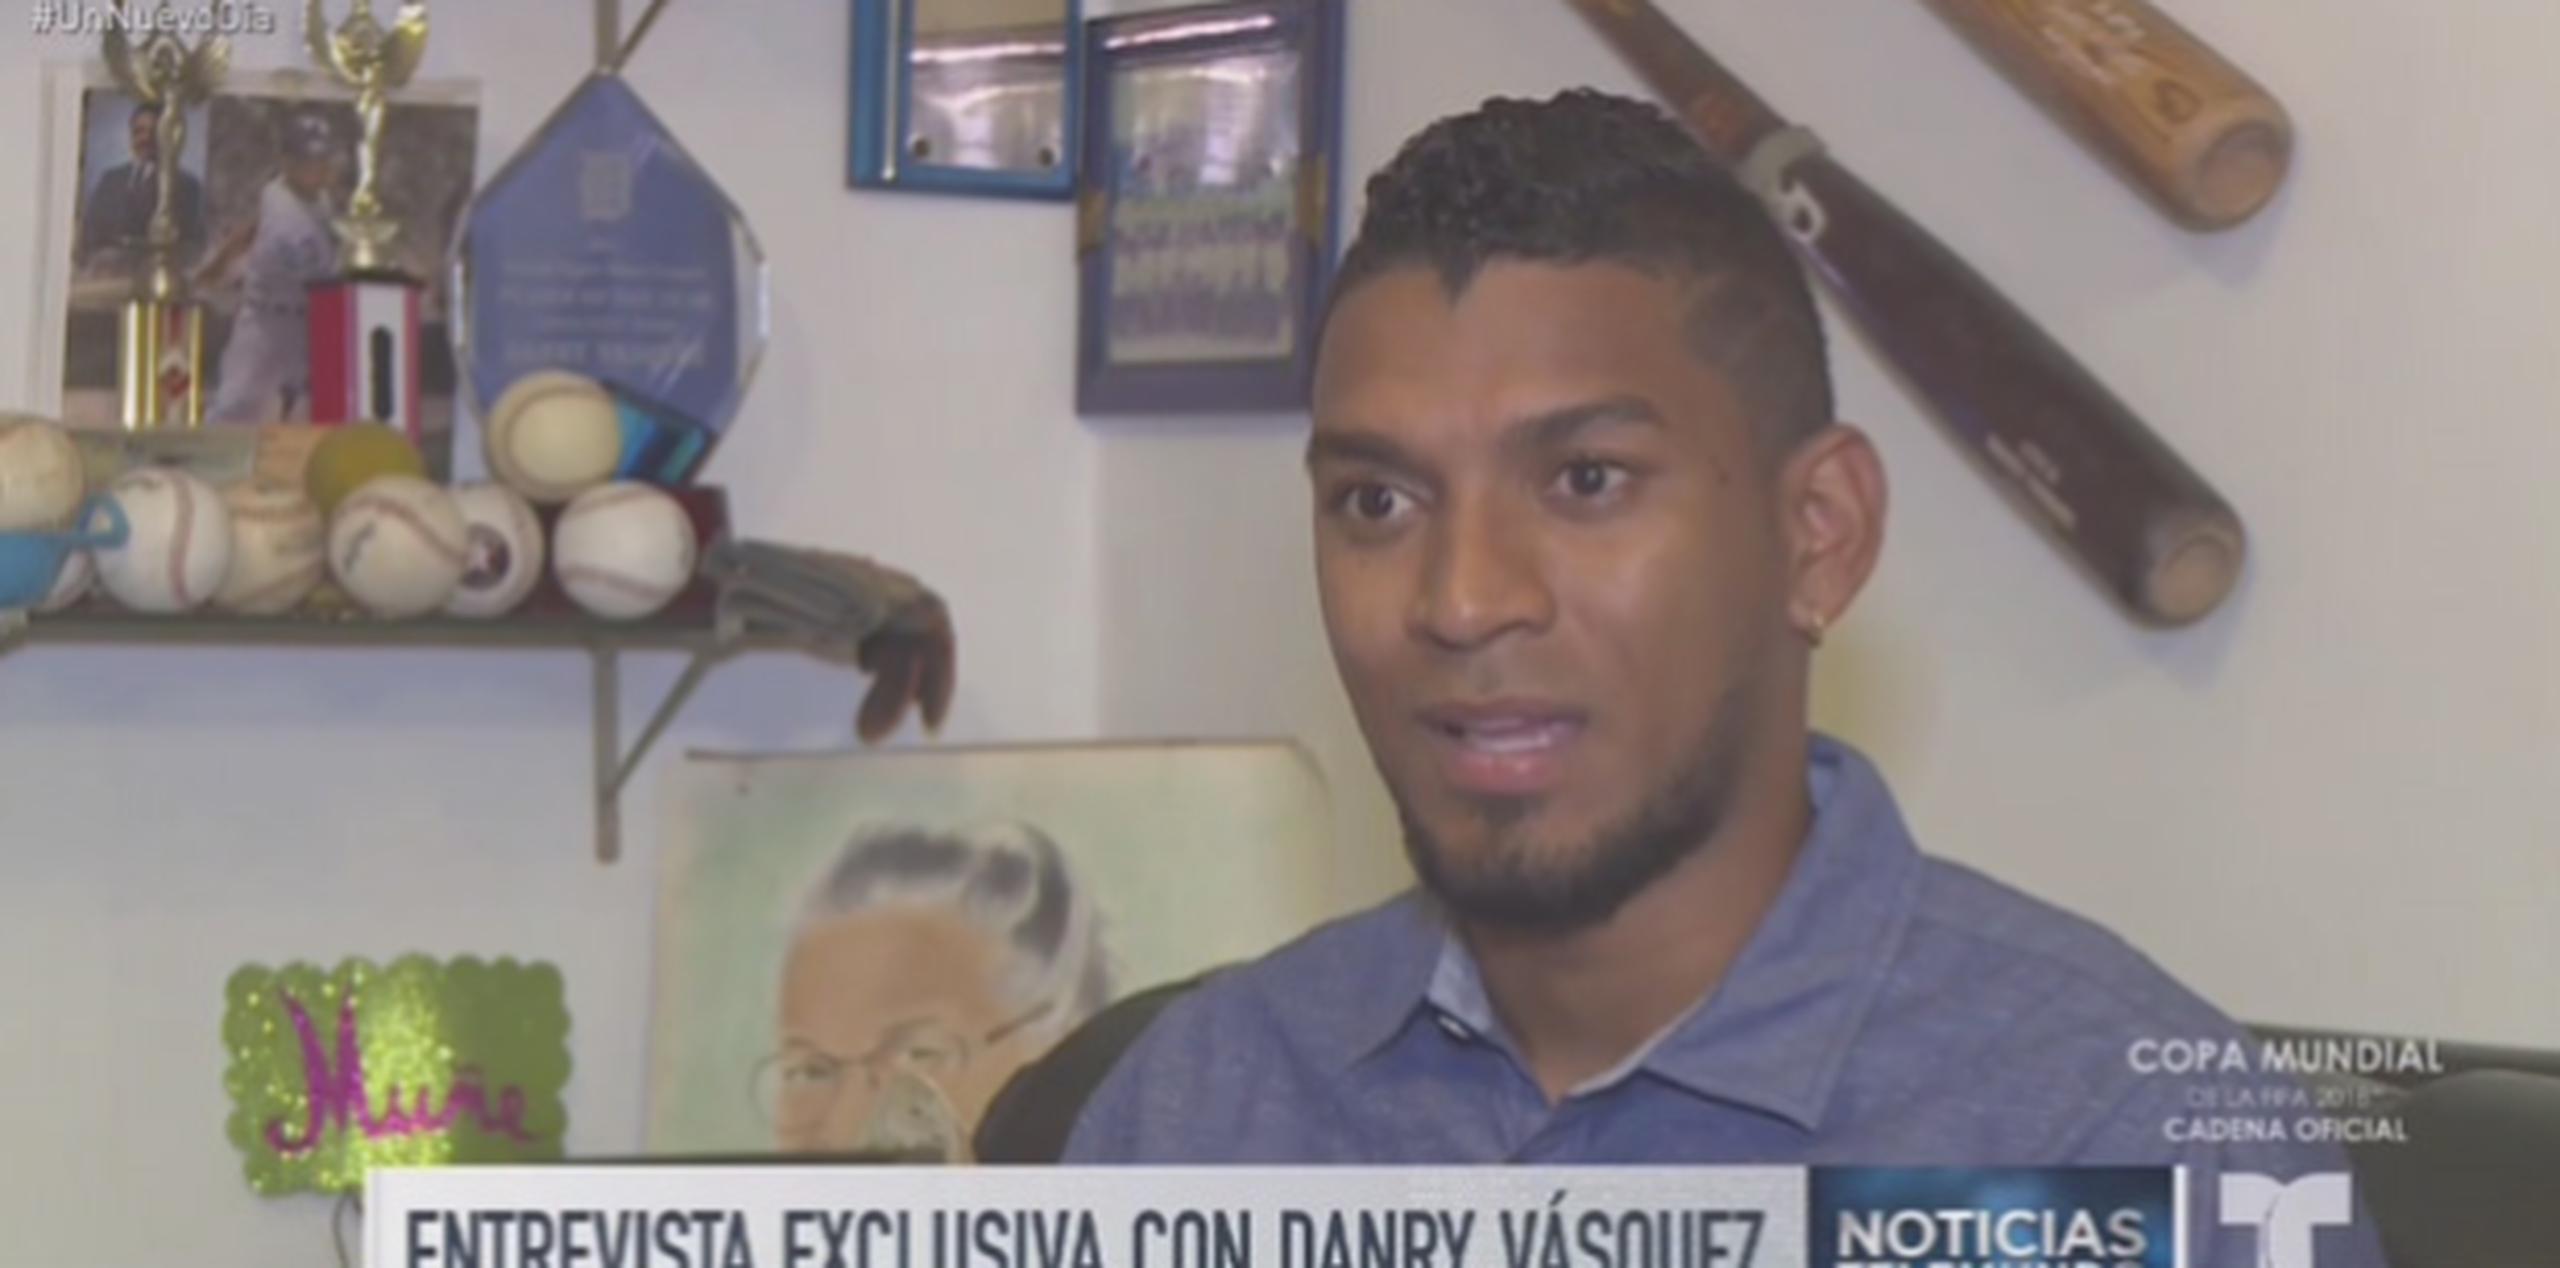 Al momento, Danry Vásquez, que solo tiene 24 años, no sabe qué sucederá con su carrera. (Captura/Telemundo)